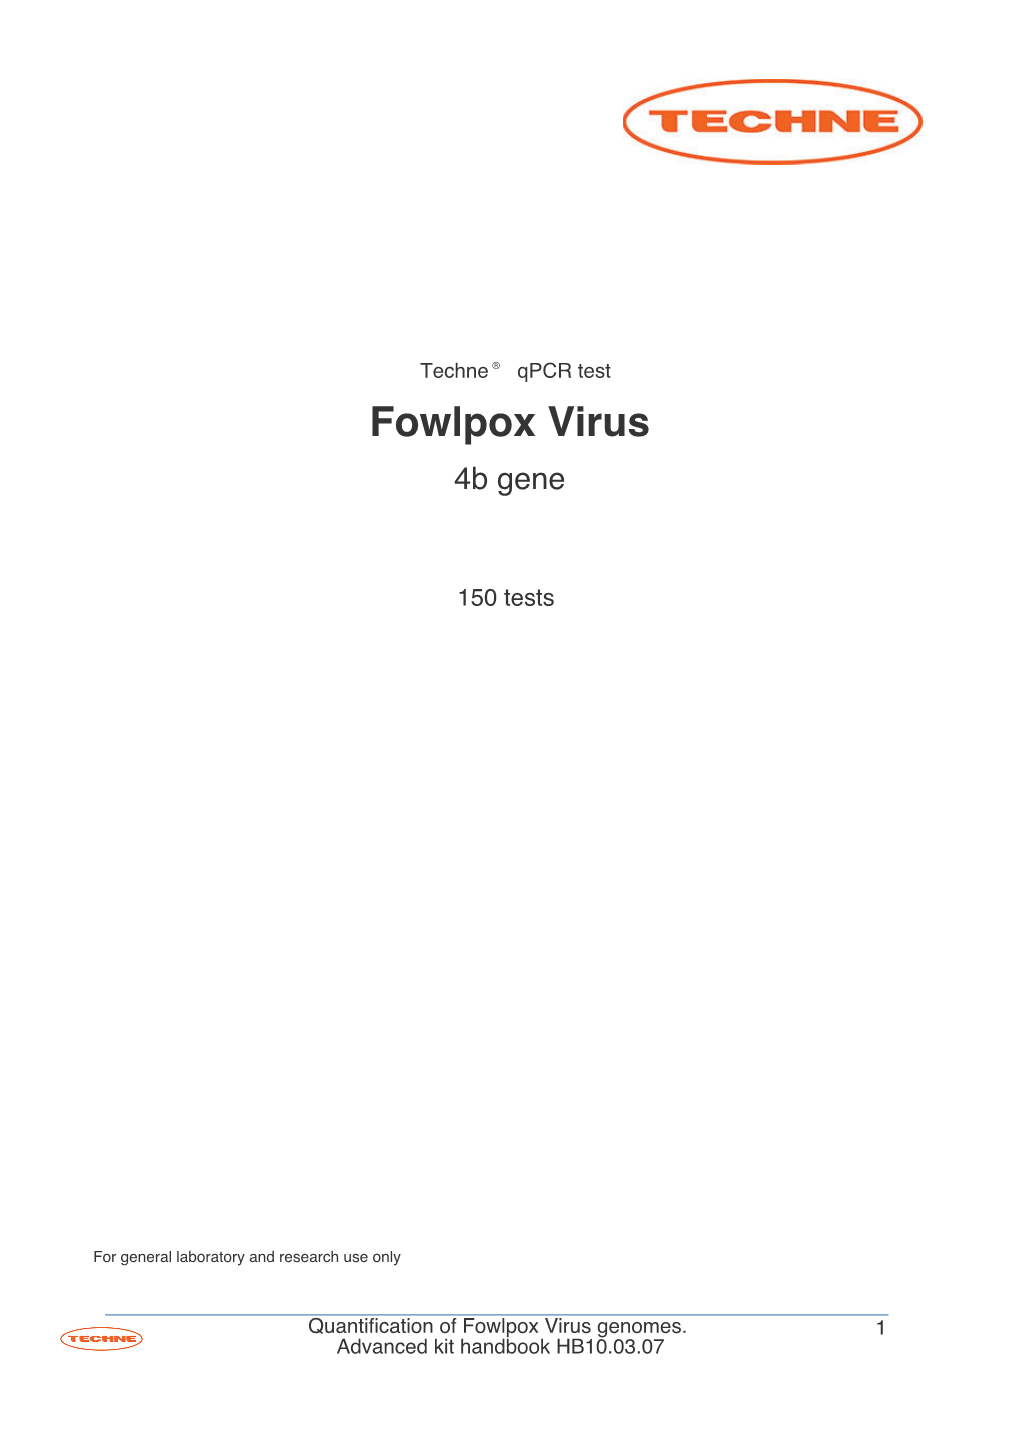 Fowlpox Virus 4B Gene